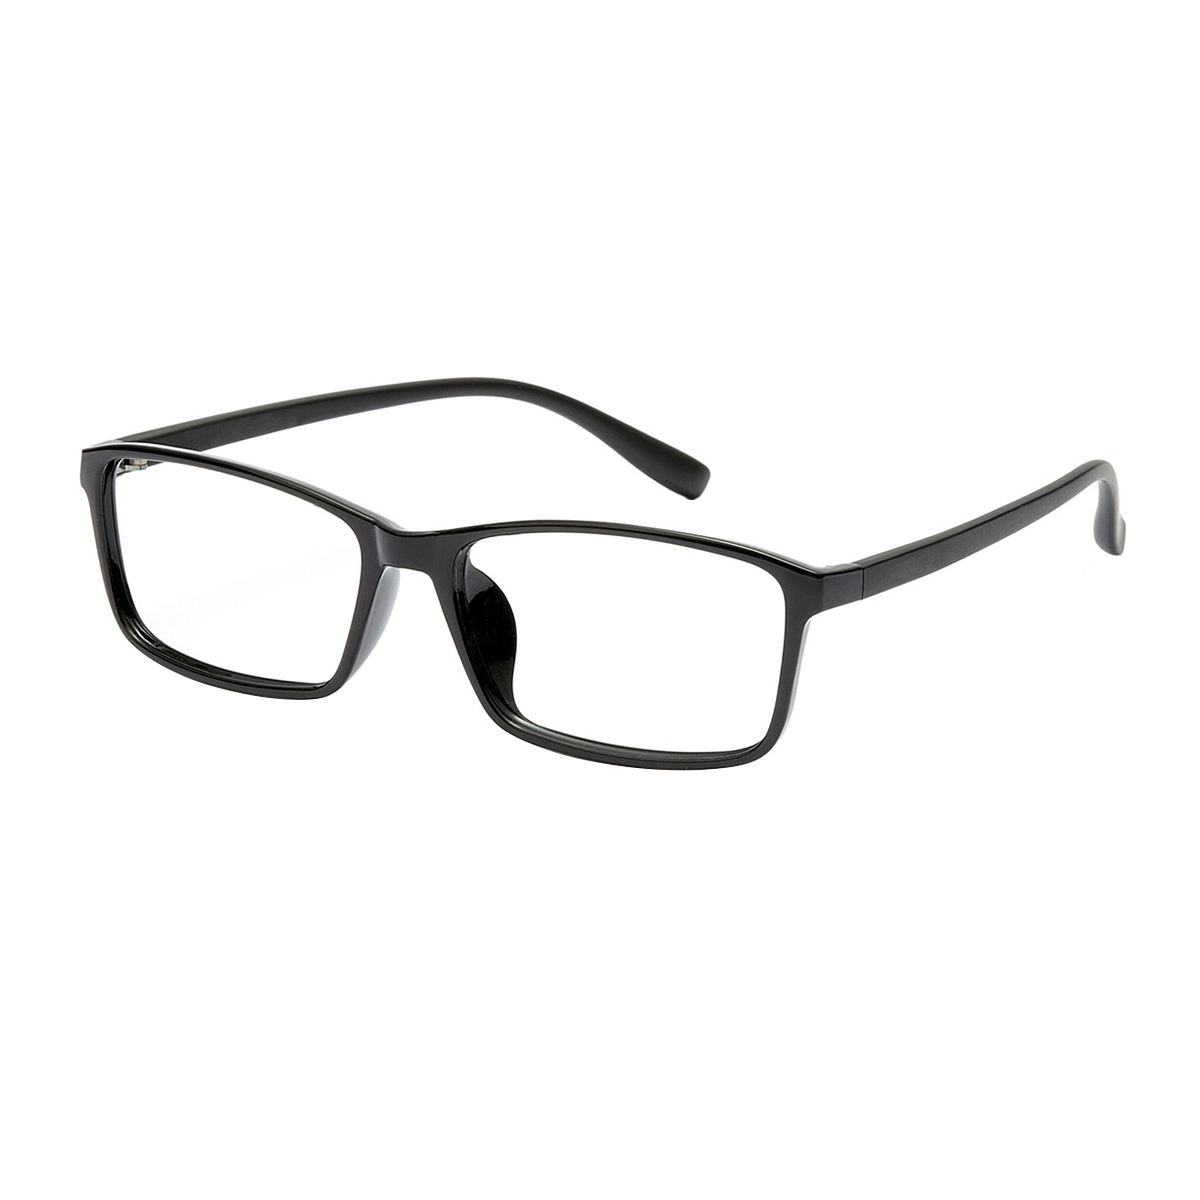 Matten - Rectangle Black Reading Glasses for Men & Women